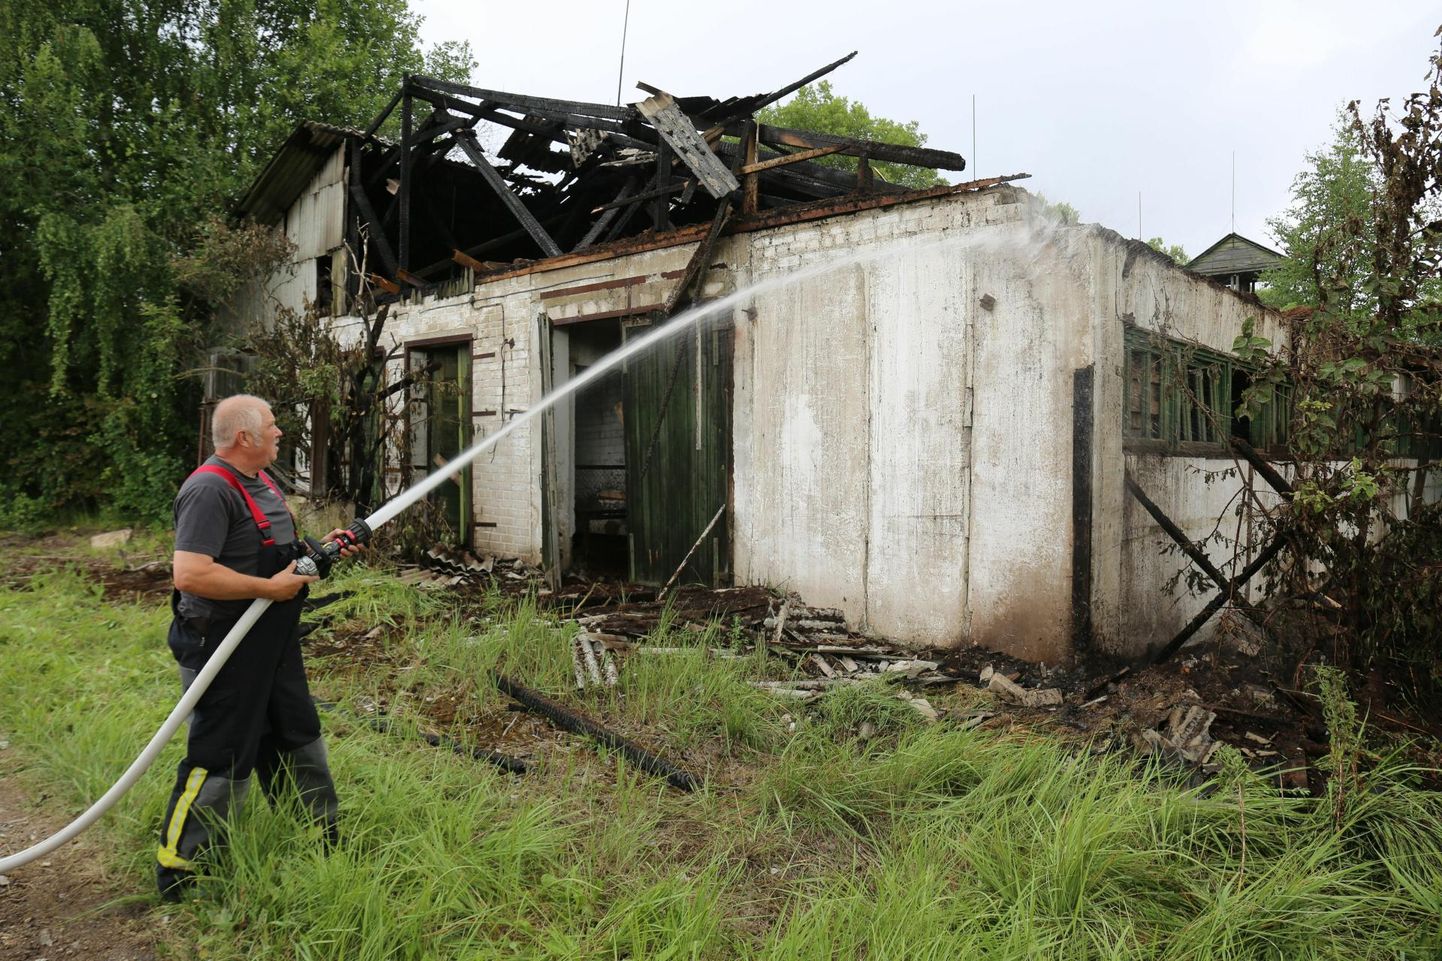 У спасателей Вярски много работы. На фотографии они занимаются ликвидацией последствий пожара в сгоревшем свинарнике в Микитамяэ.